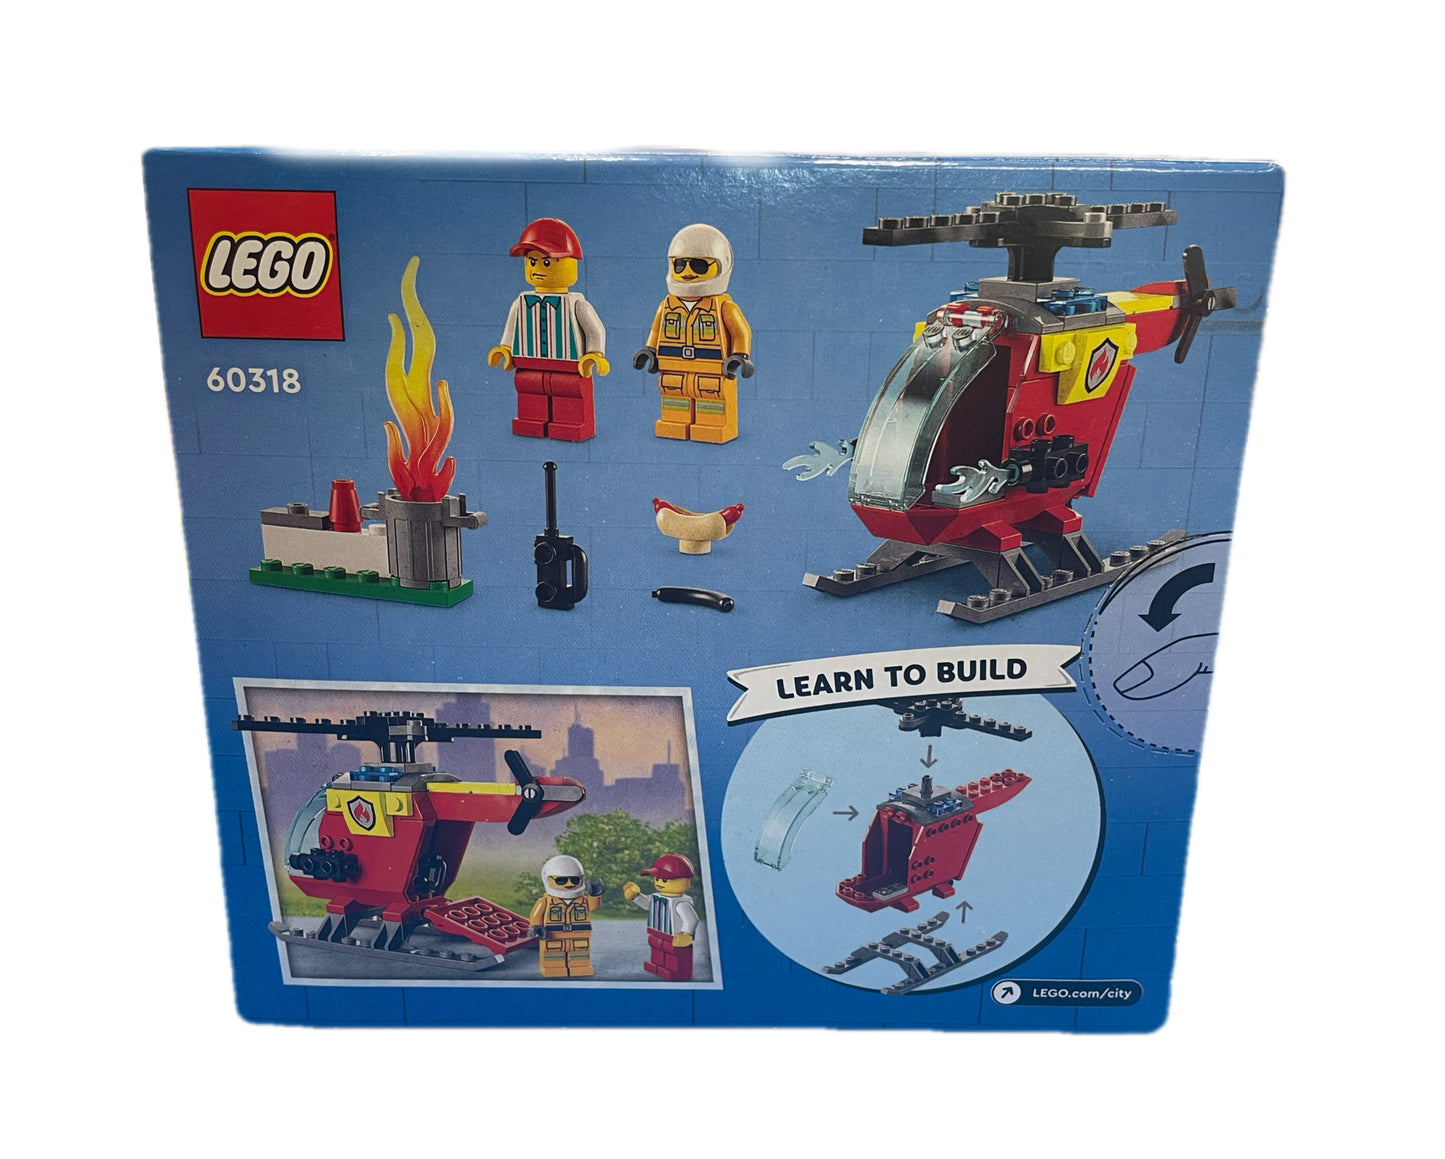 Lego City 53 pcs